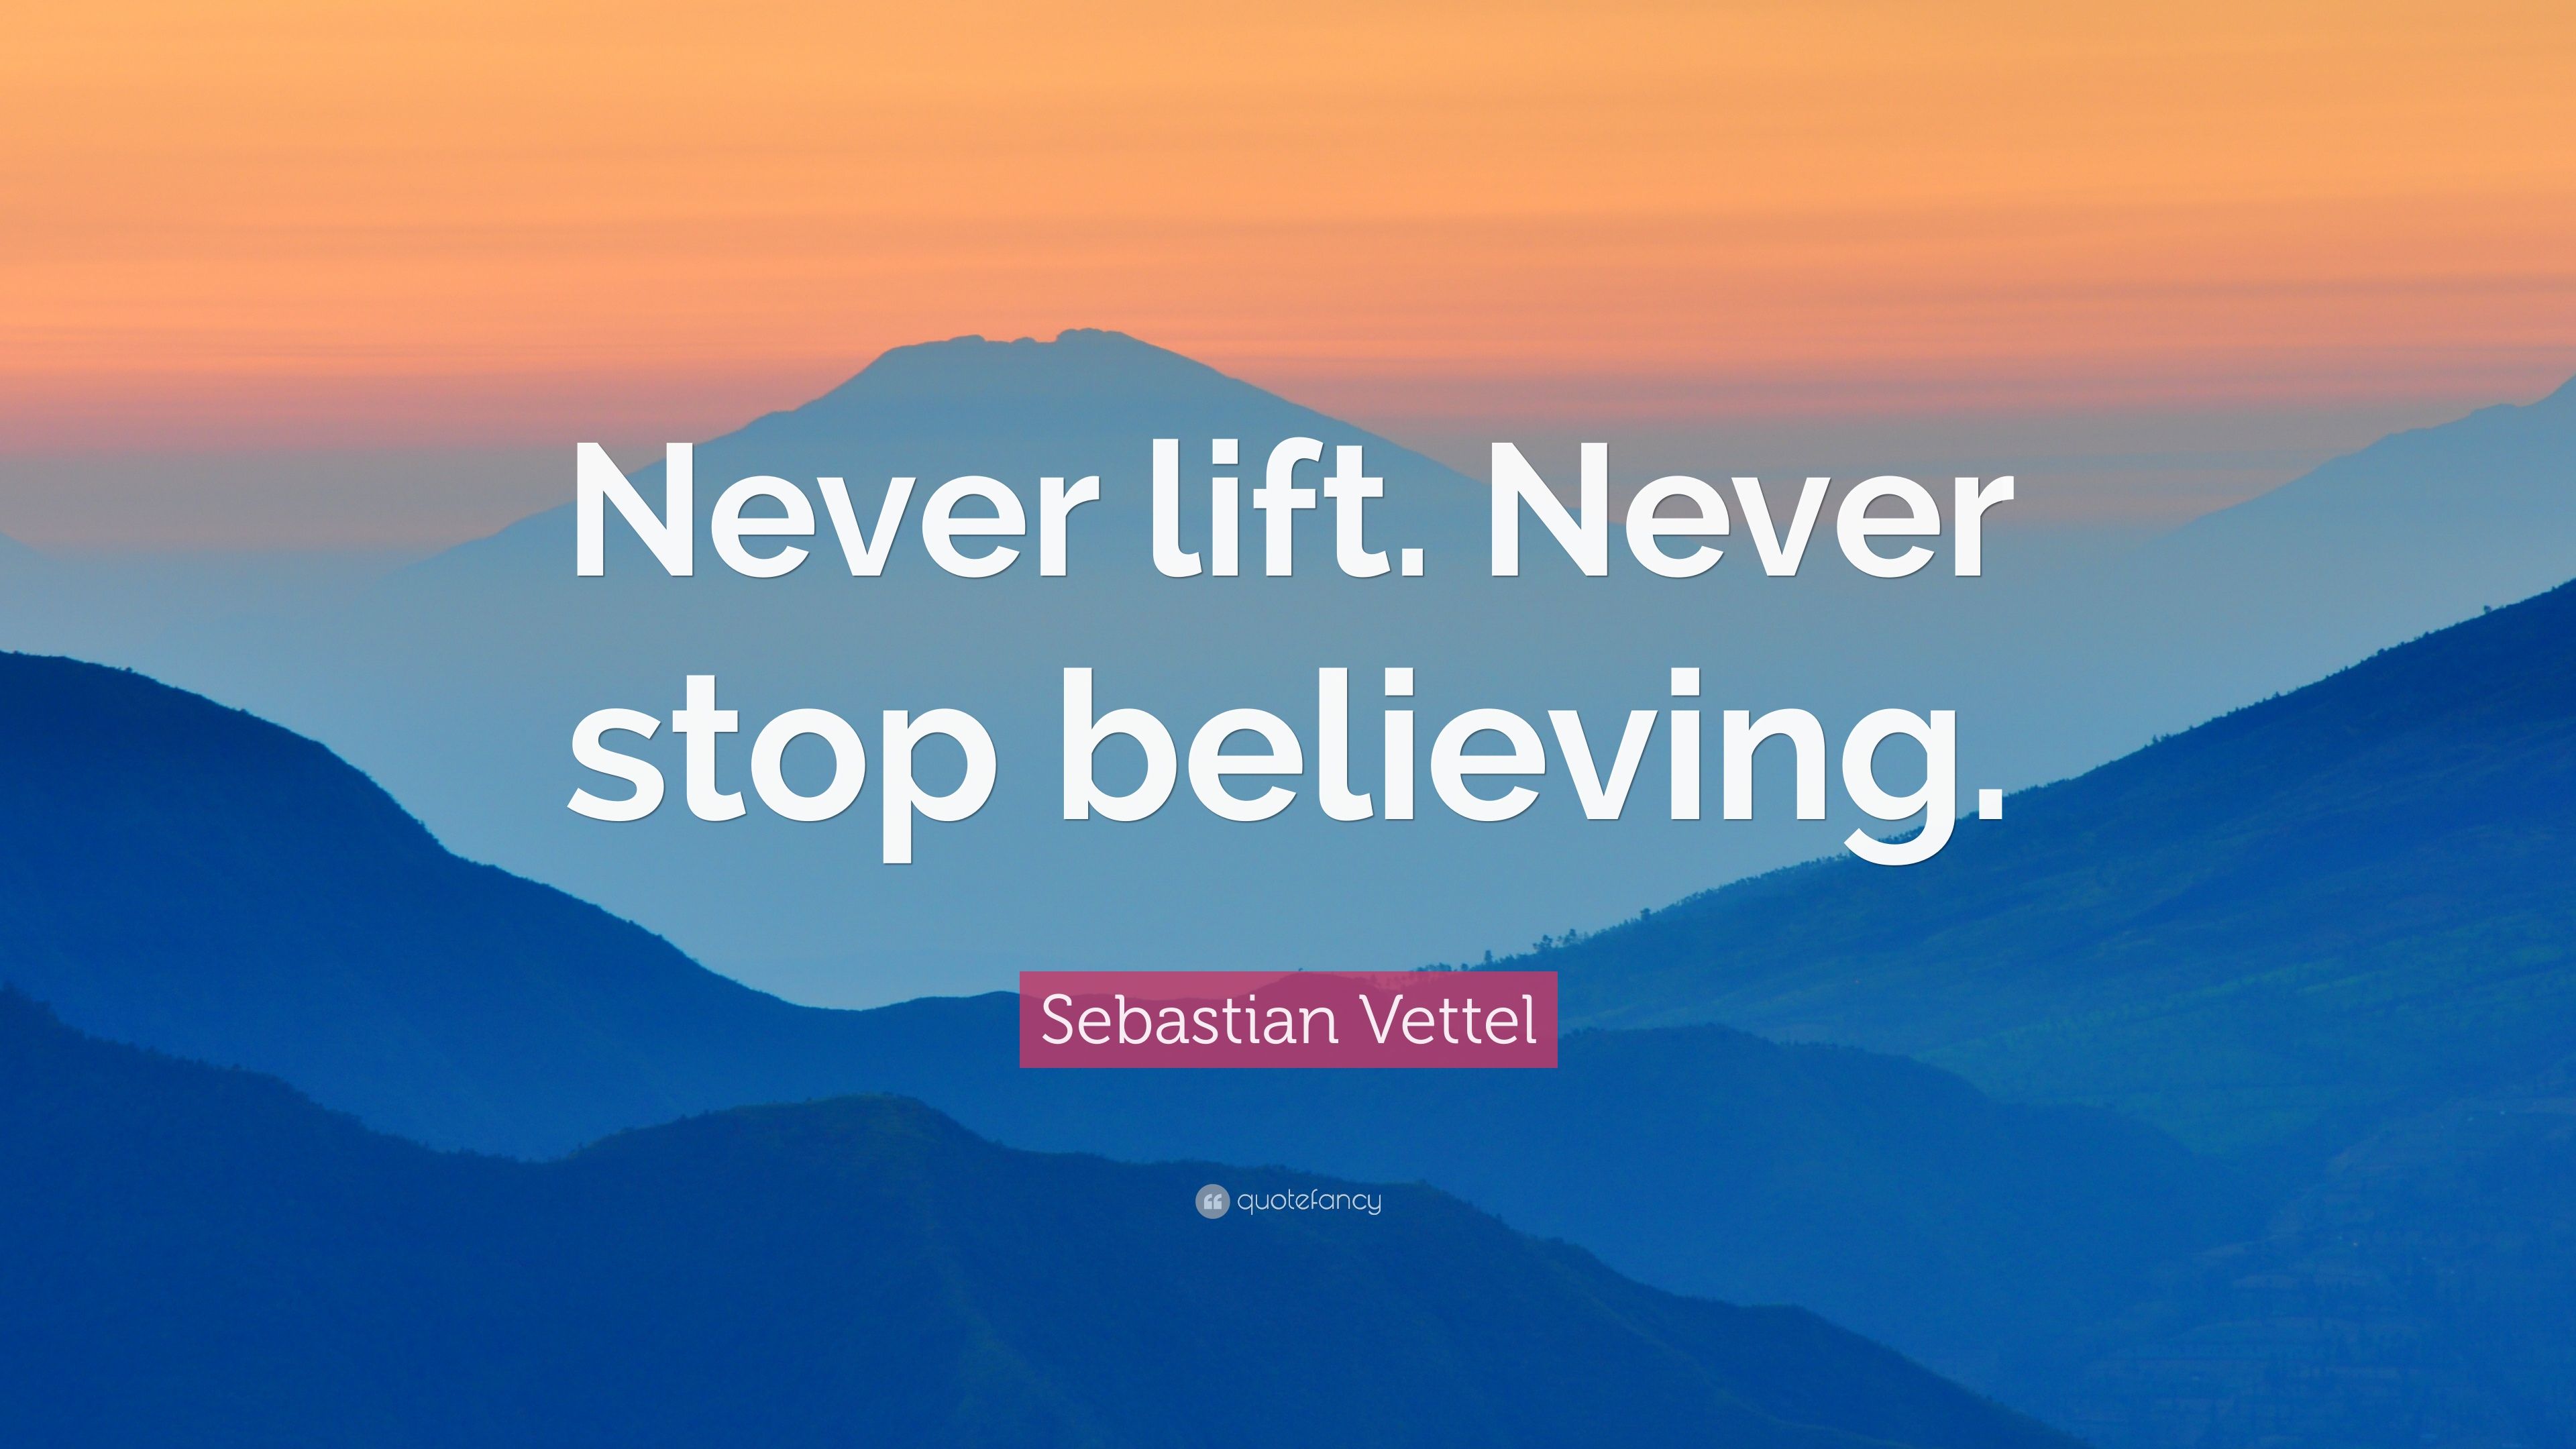 Sebastian Vettel Quote: “Never lift. Never stop believing.” 7